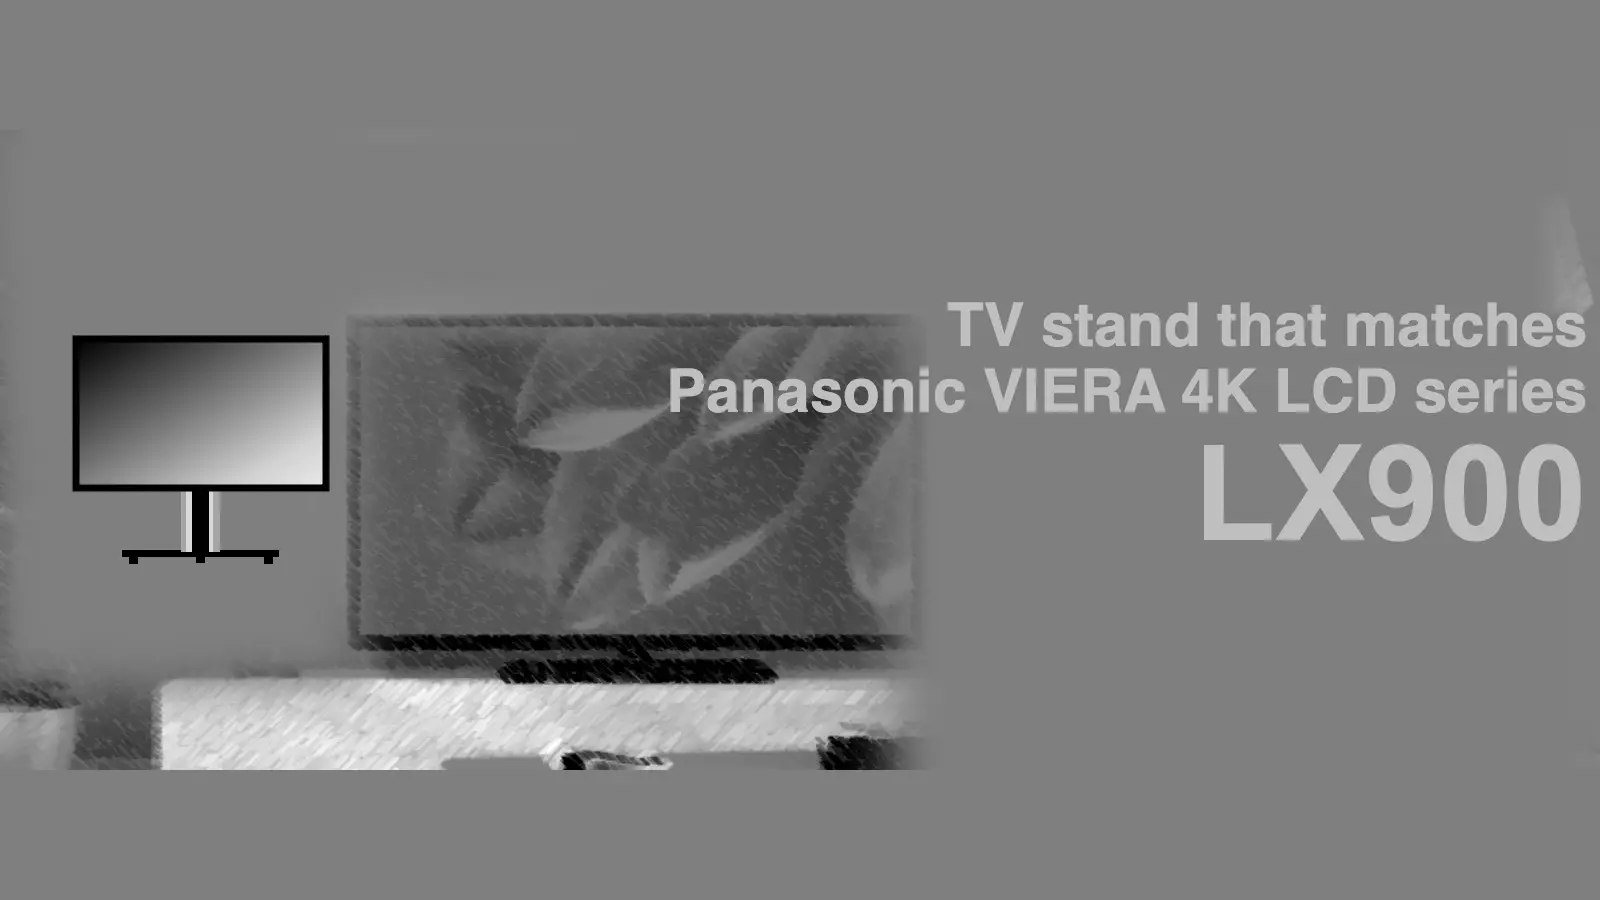 パナソニック4K液晶ビエラ LX900に最適なテレビスタンド紹介記事のアイキャッチャー